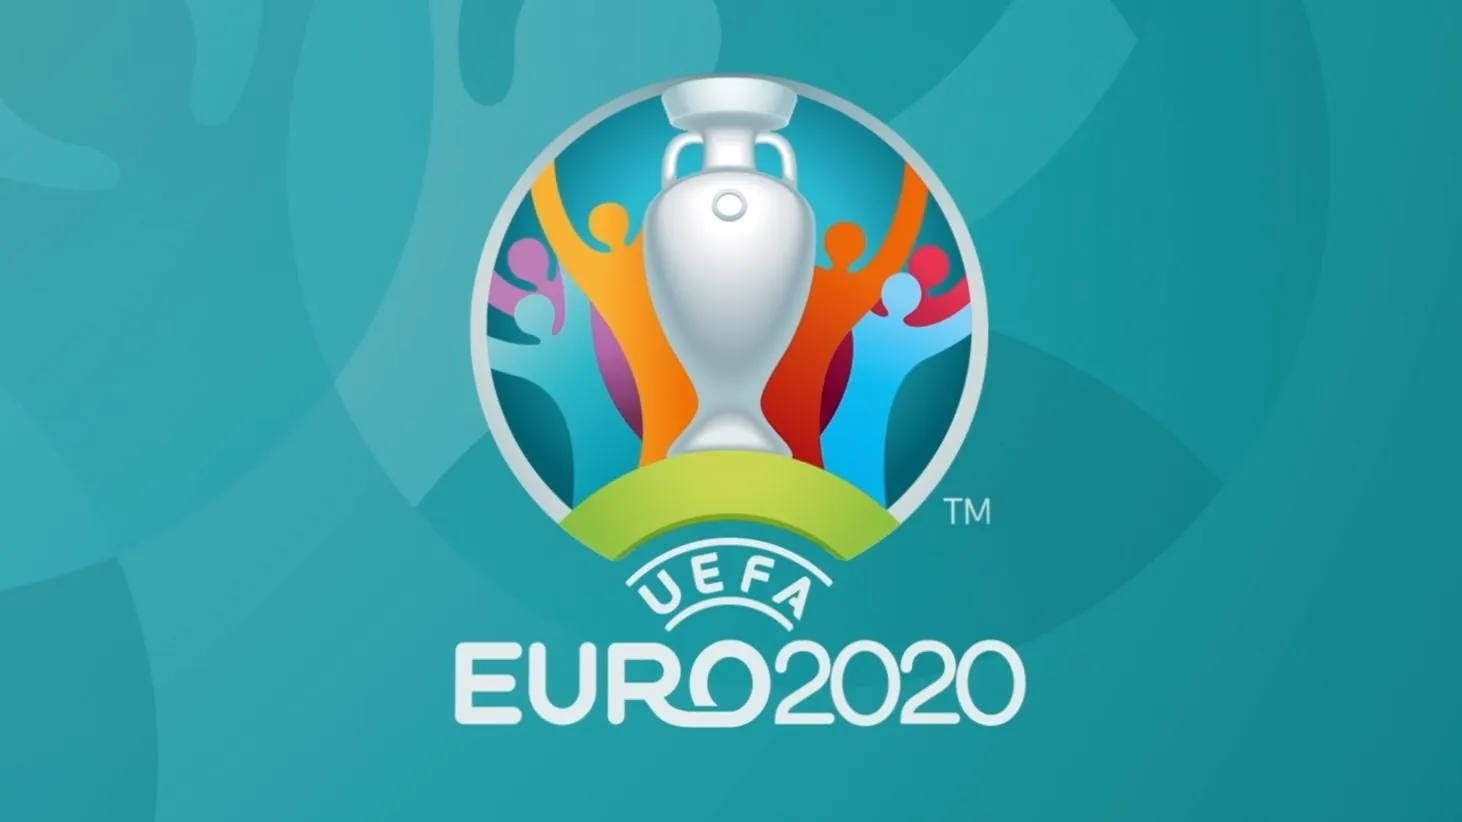 UEFA Euro 2020: Diffusion en direct des matchs de l'équipe de France sur les chaînes La 1ère